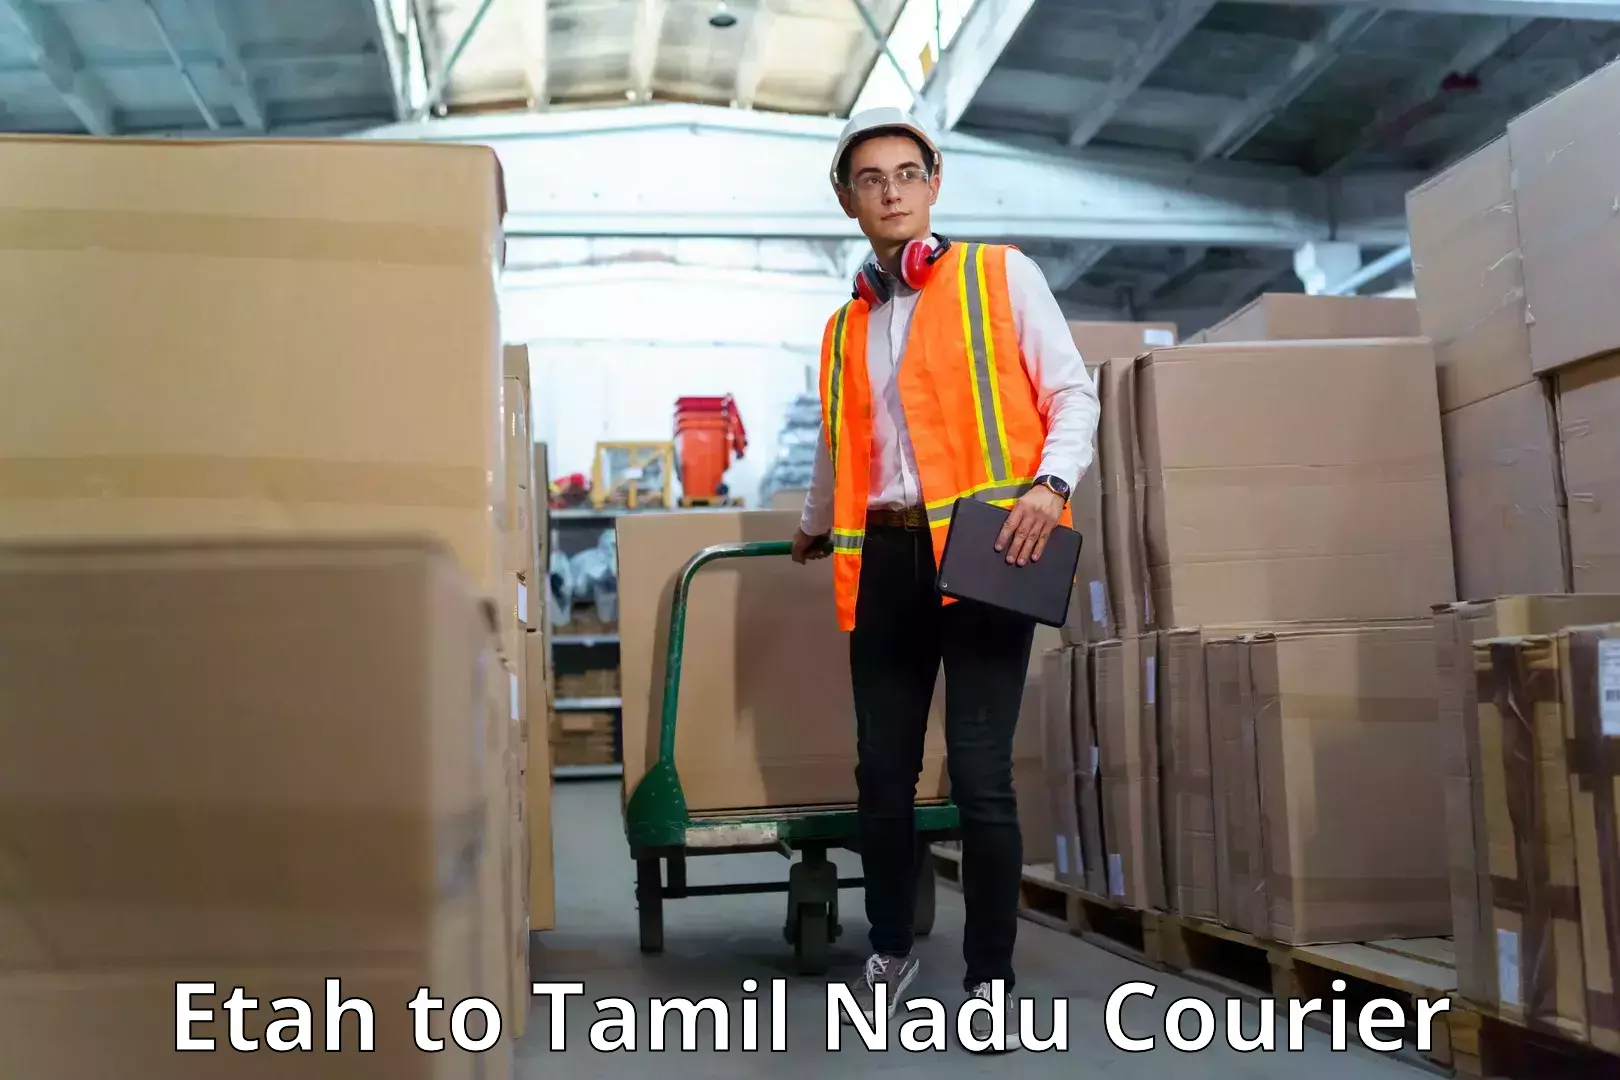 Premium courier solutions Etah to Tamil Nadu